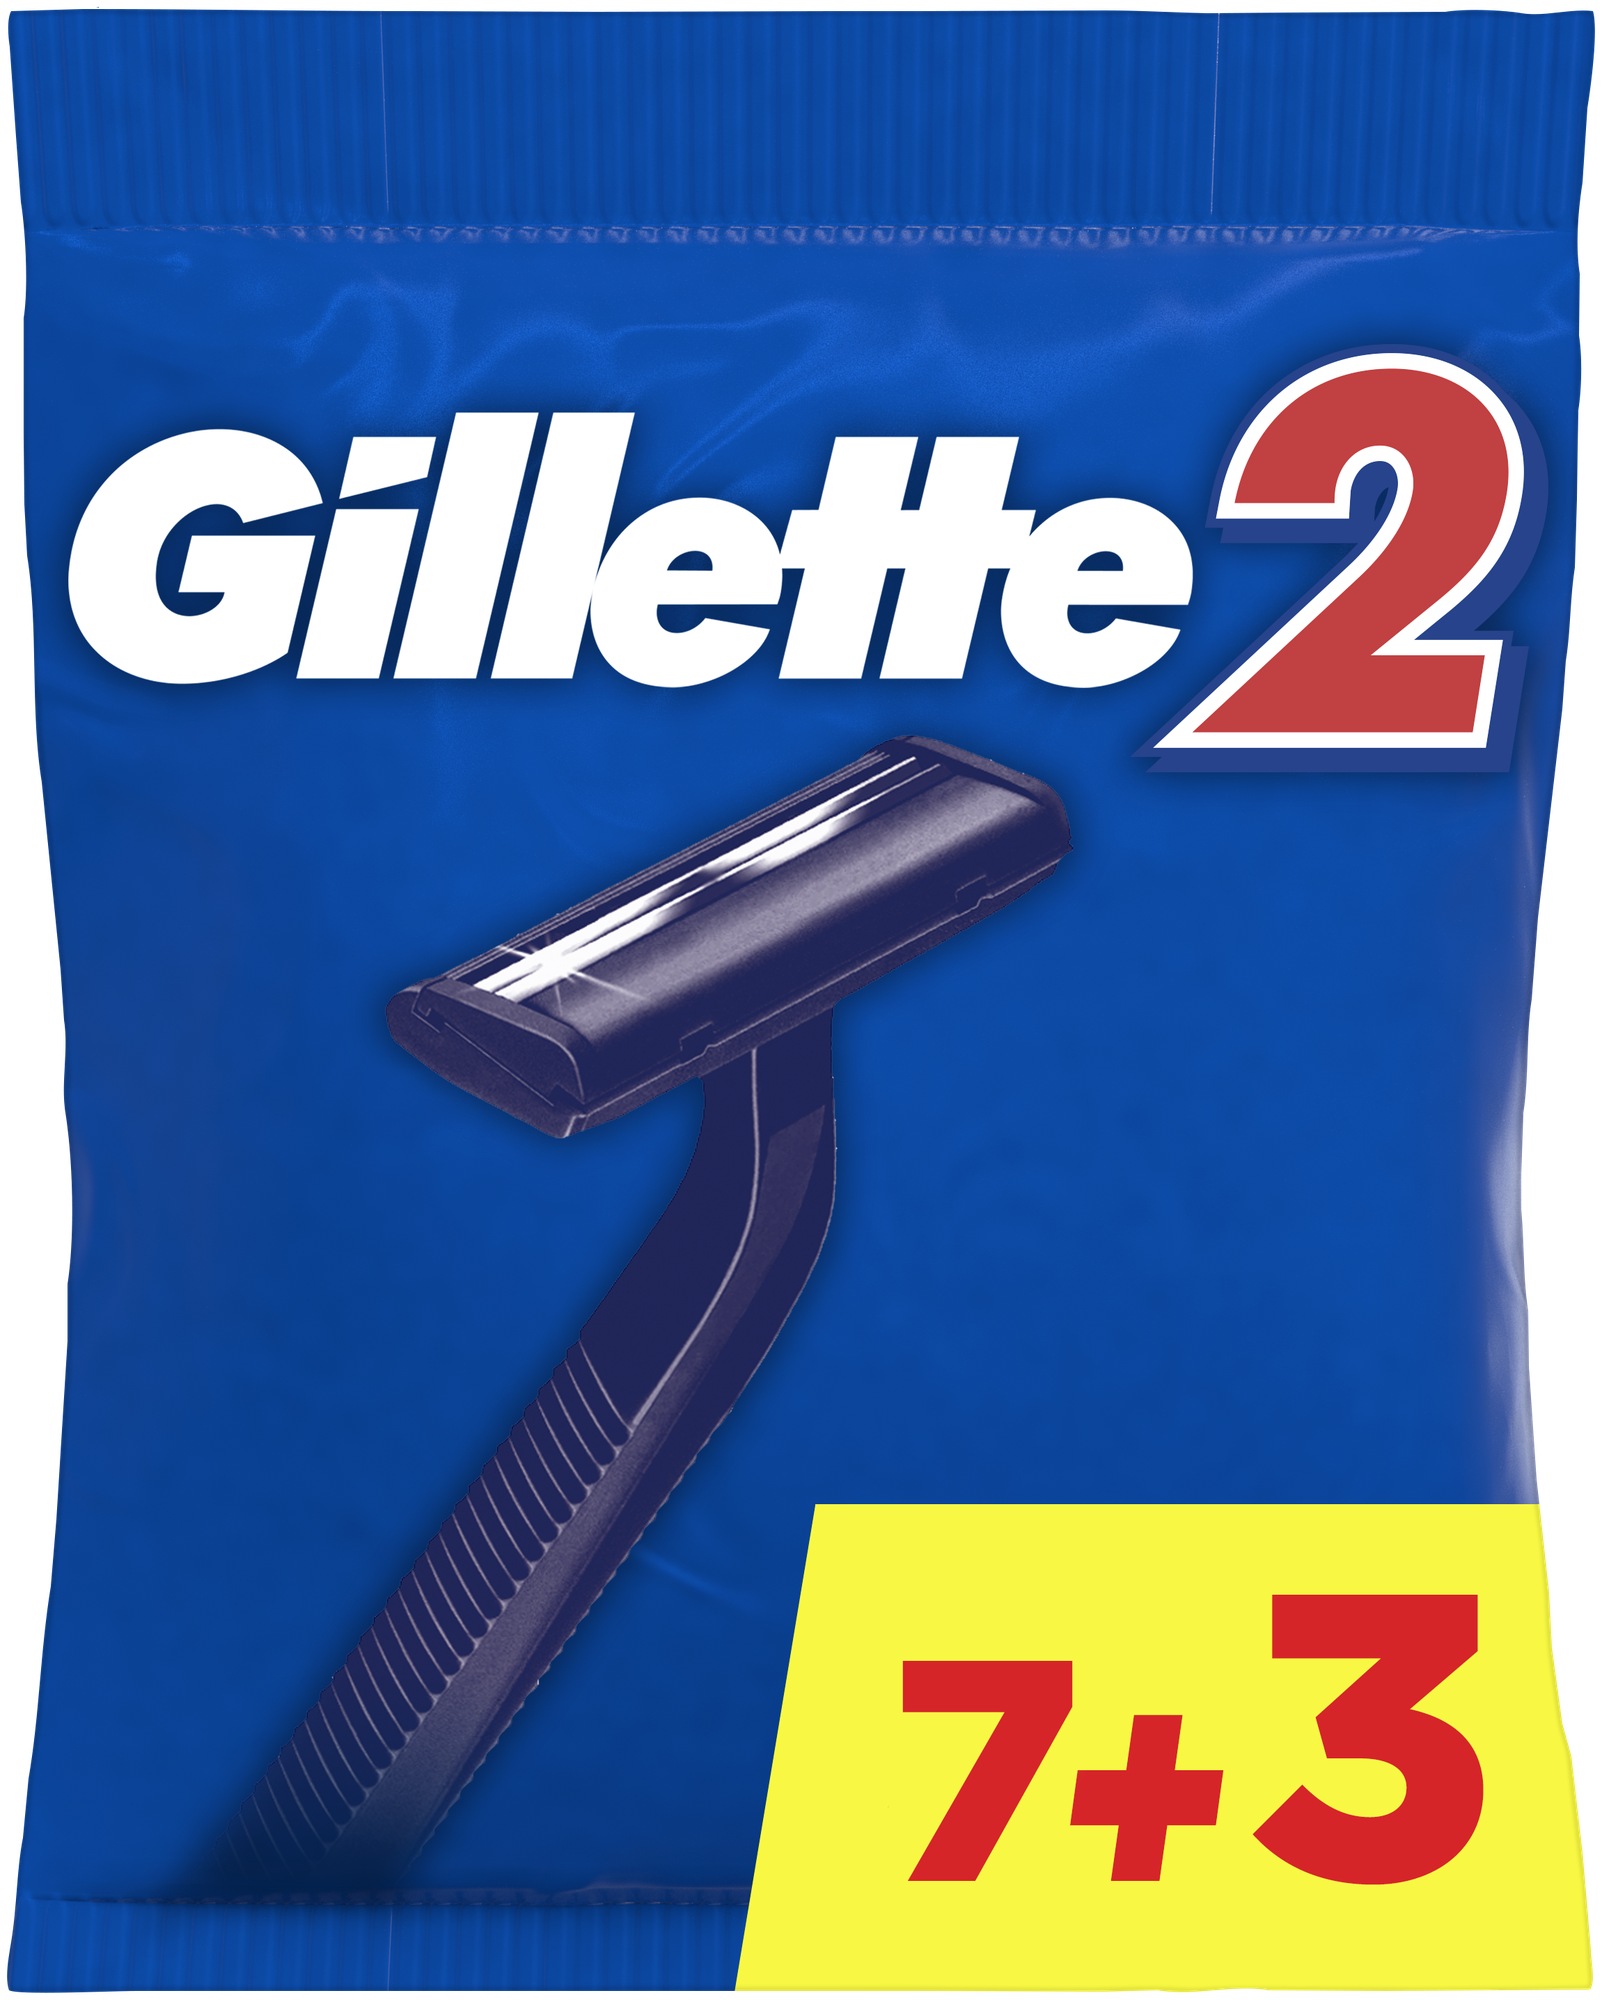    Gillette 2